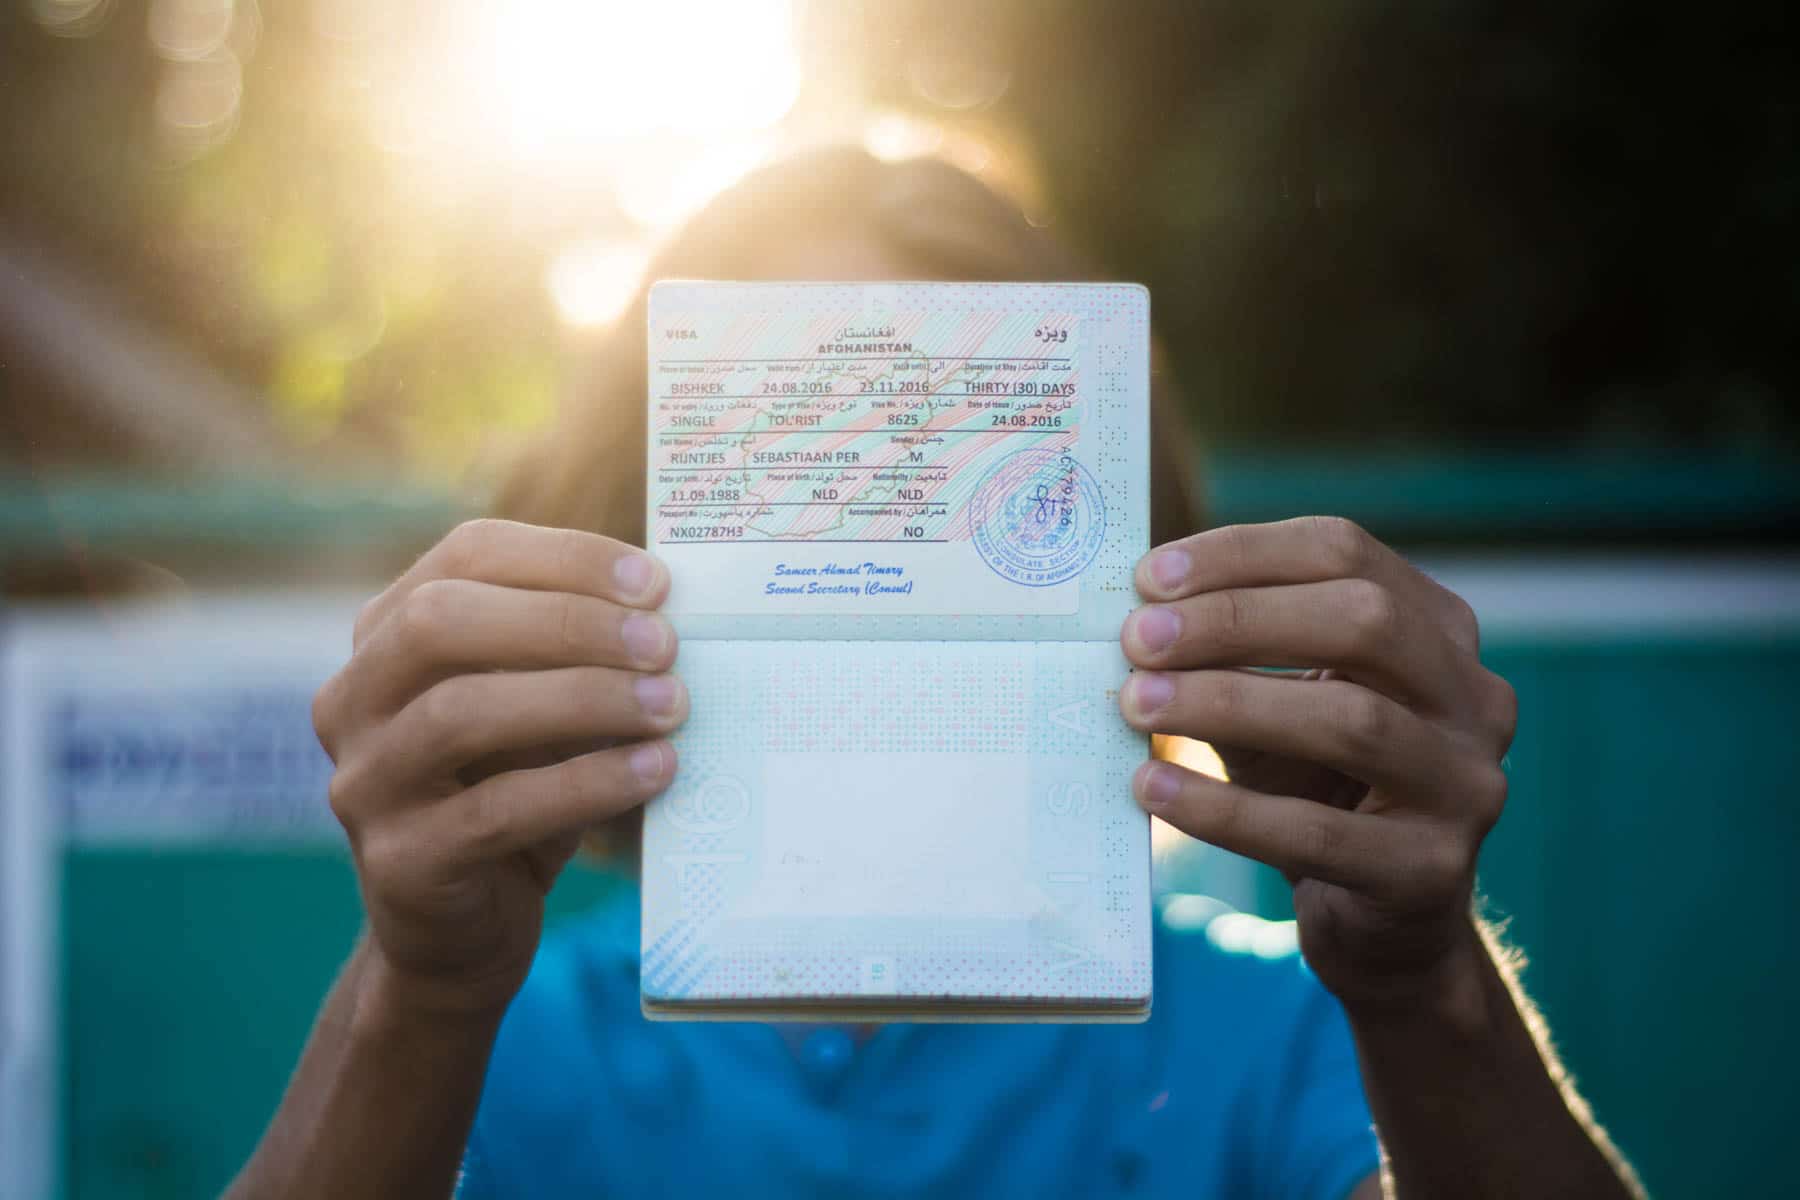 An Afghanistan visa